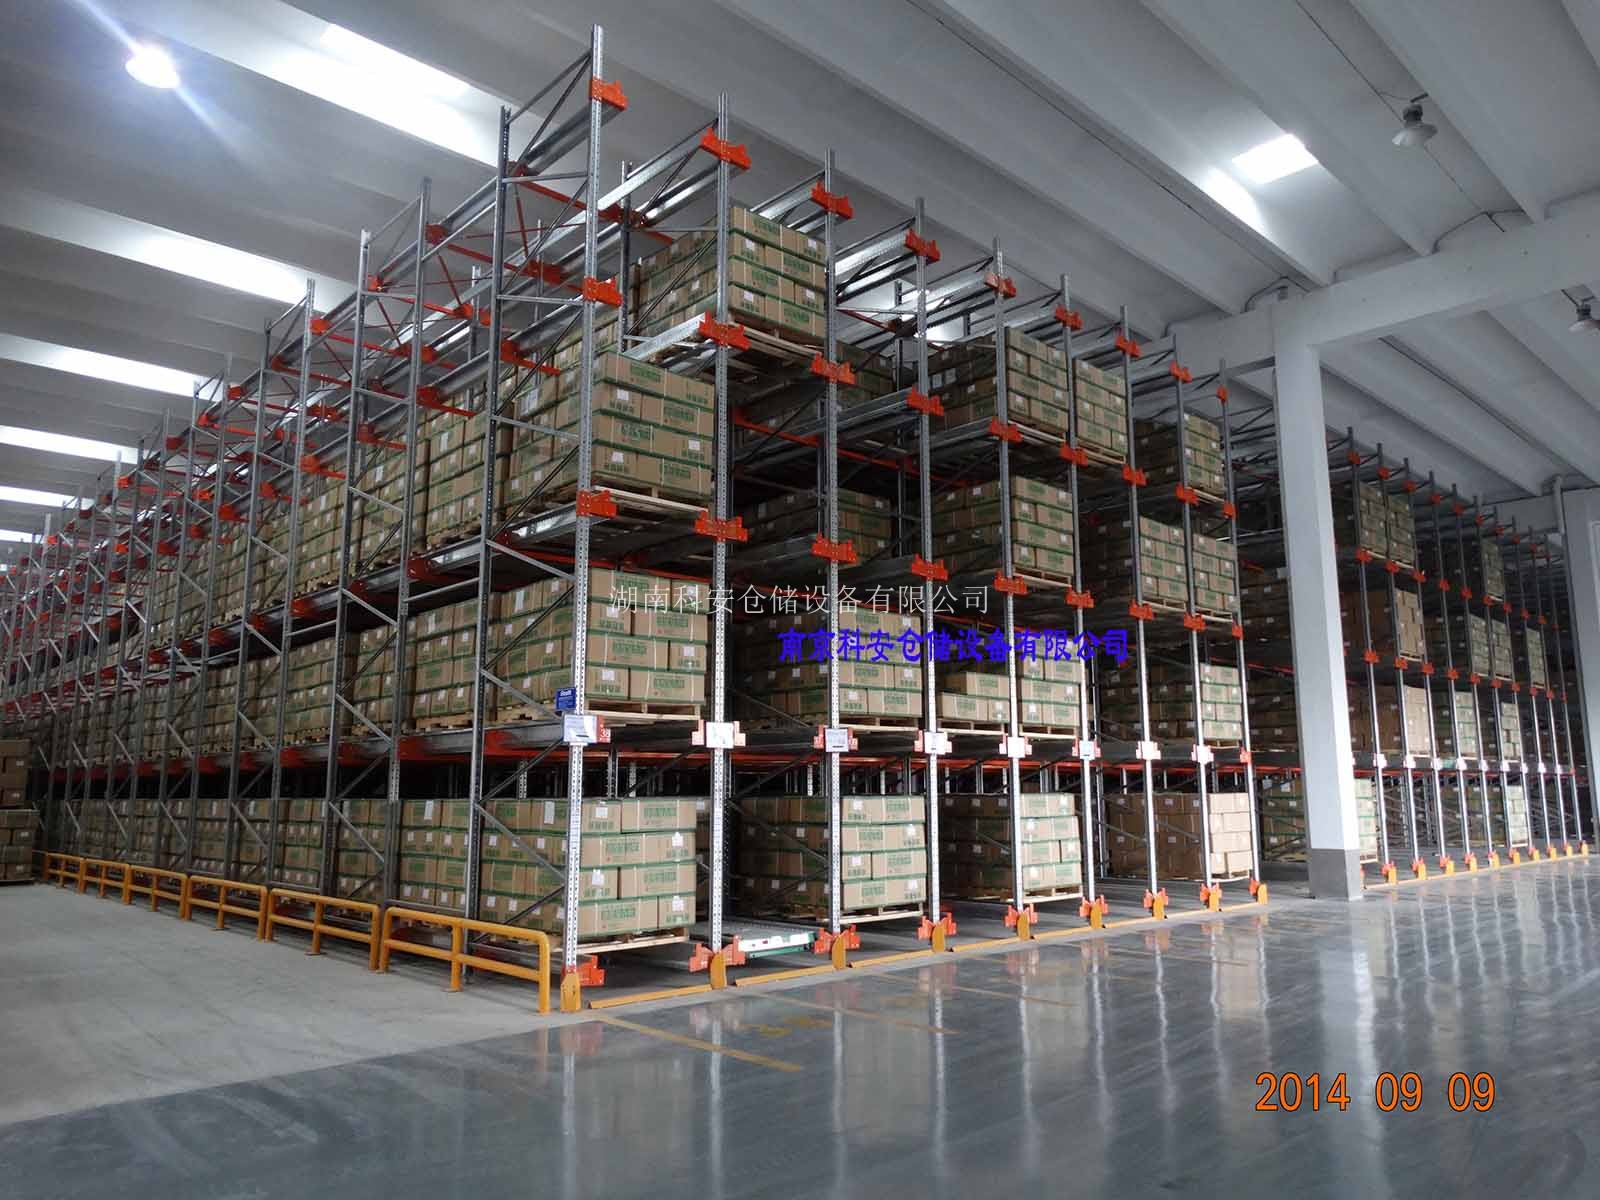 上海某灯具公司半自动化高密存储仓库